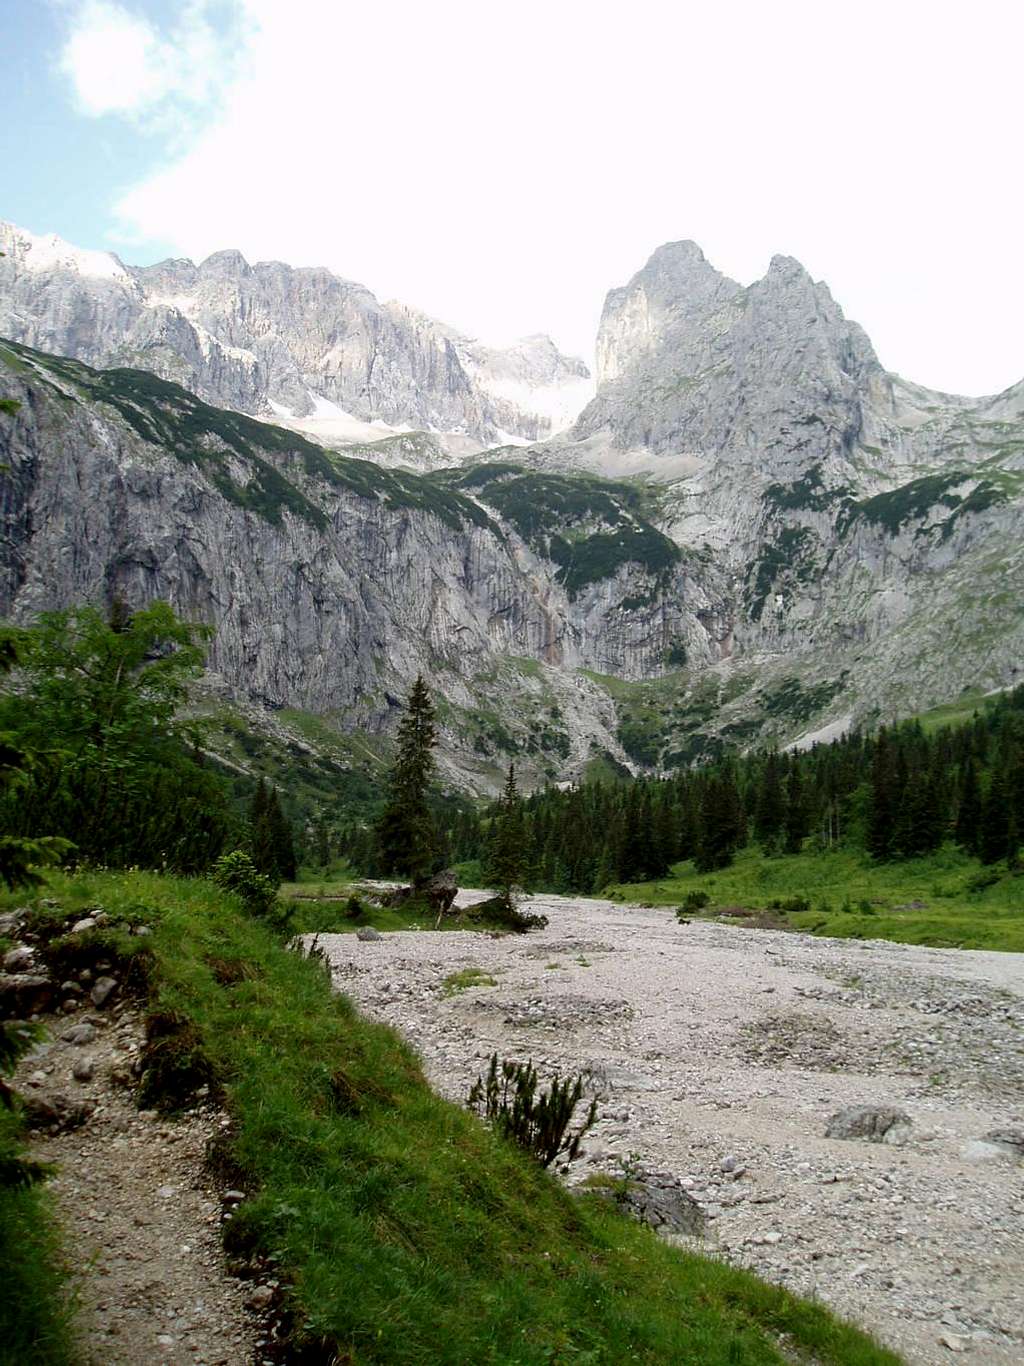 View towards Zugspitze from the Höllentalhütte